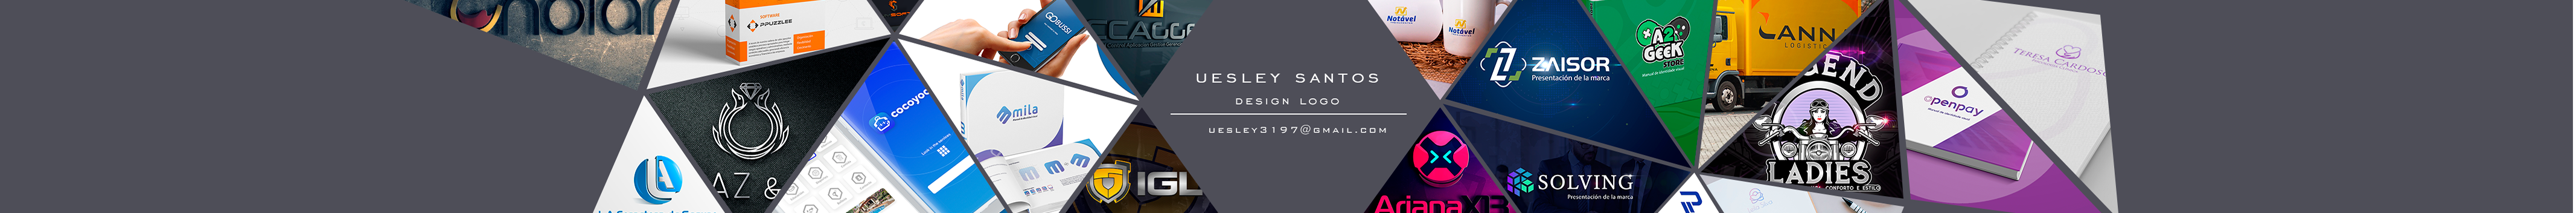 Banner de perfil de Uesley Melo dos Santos